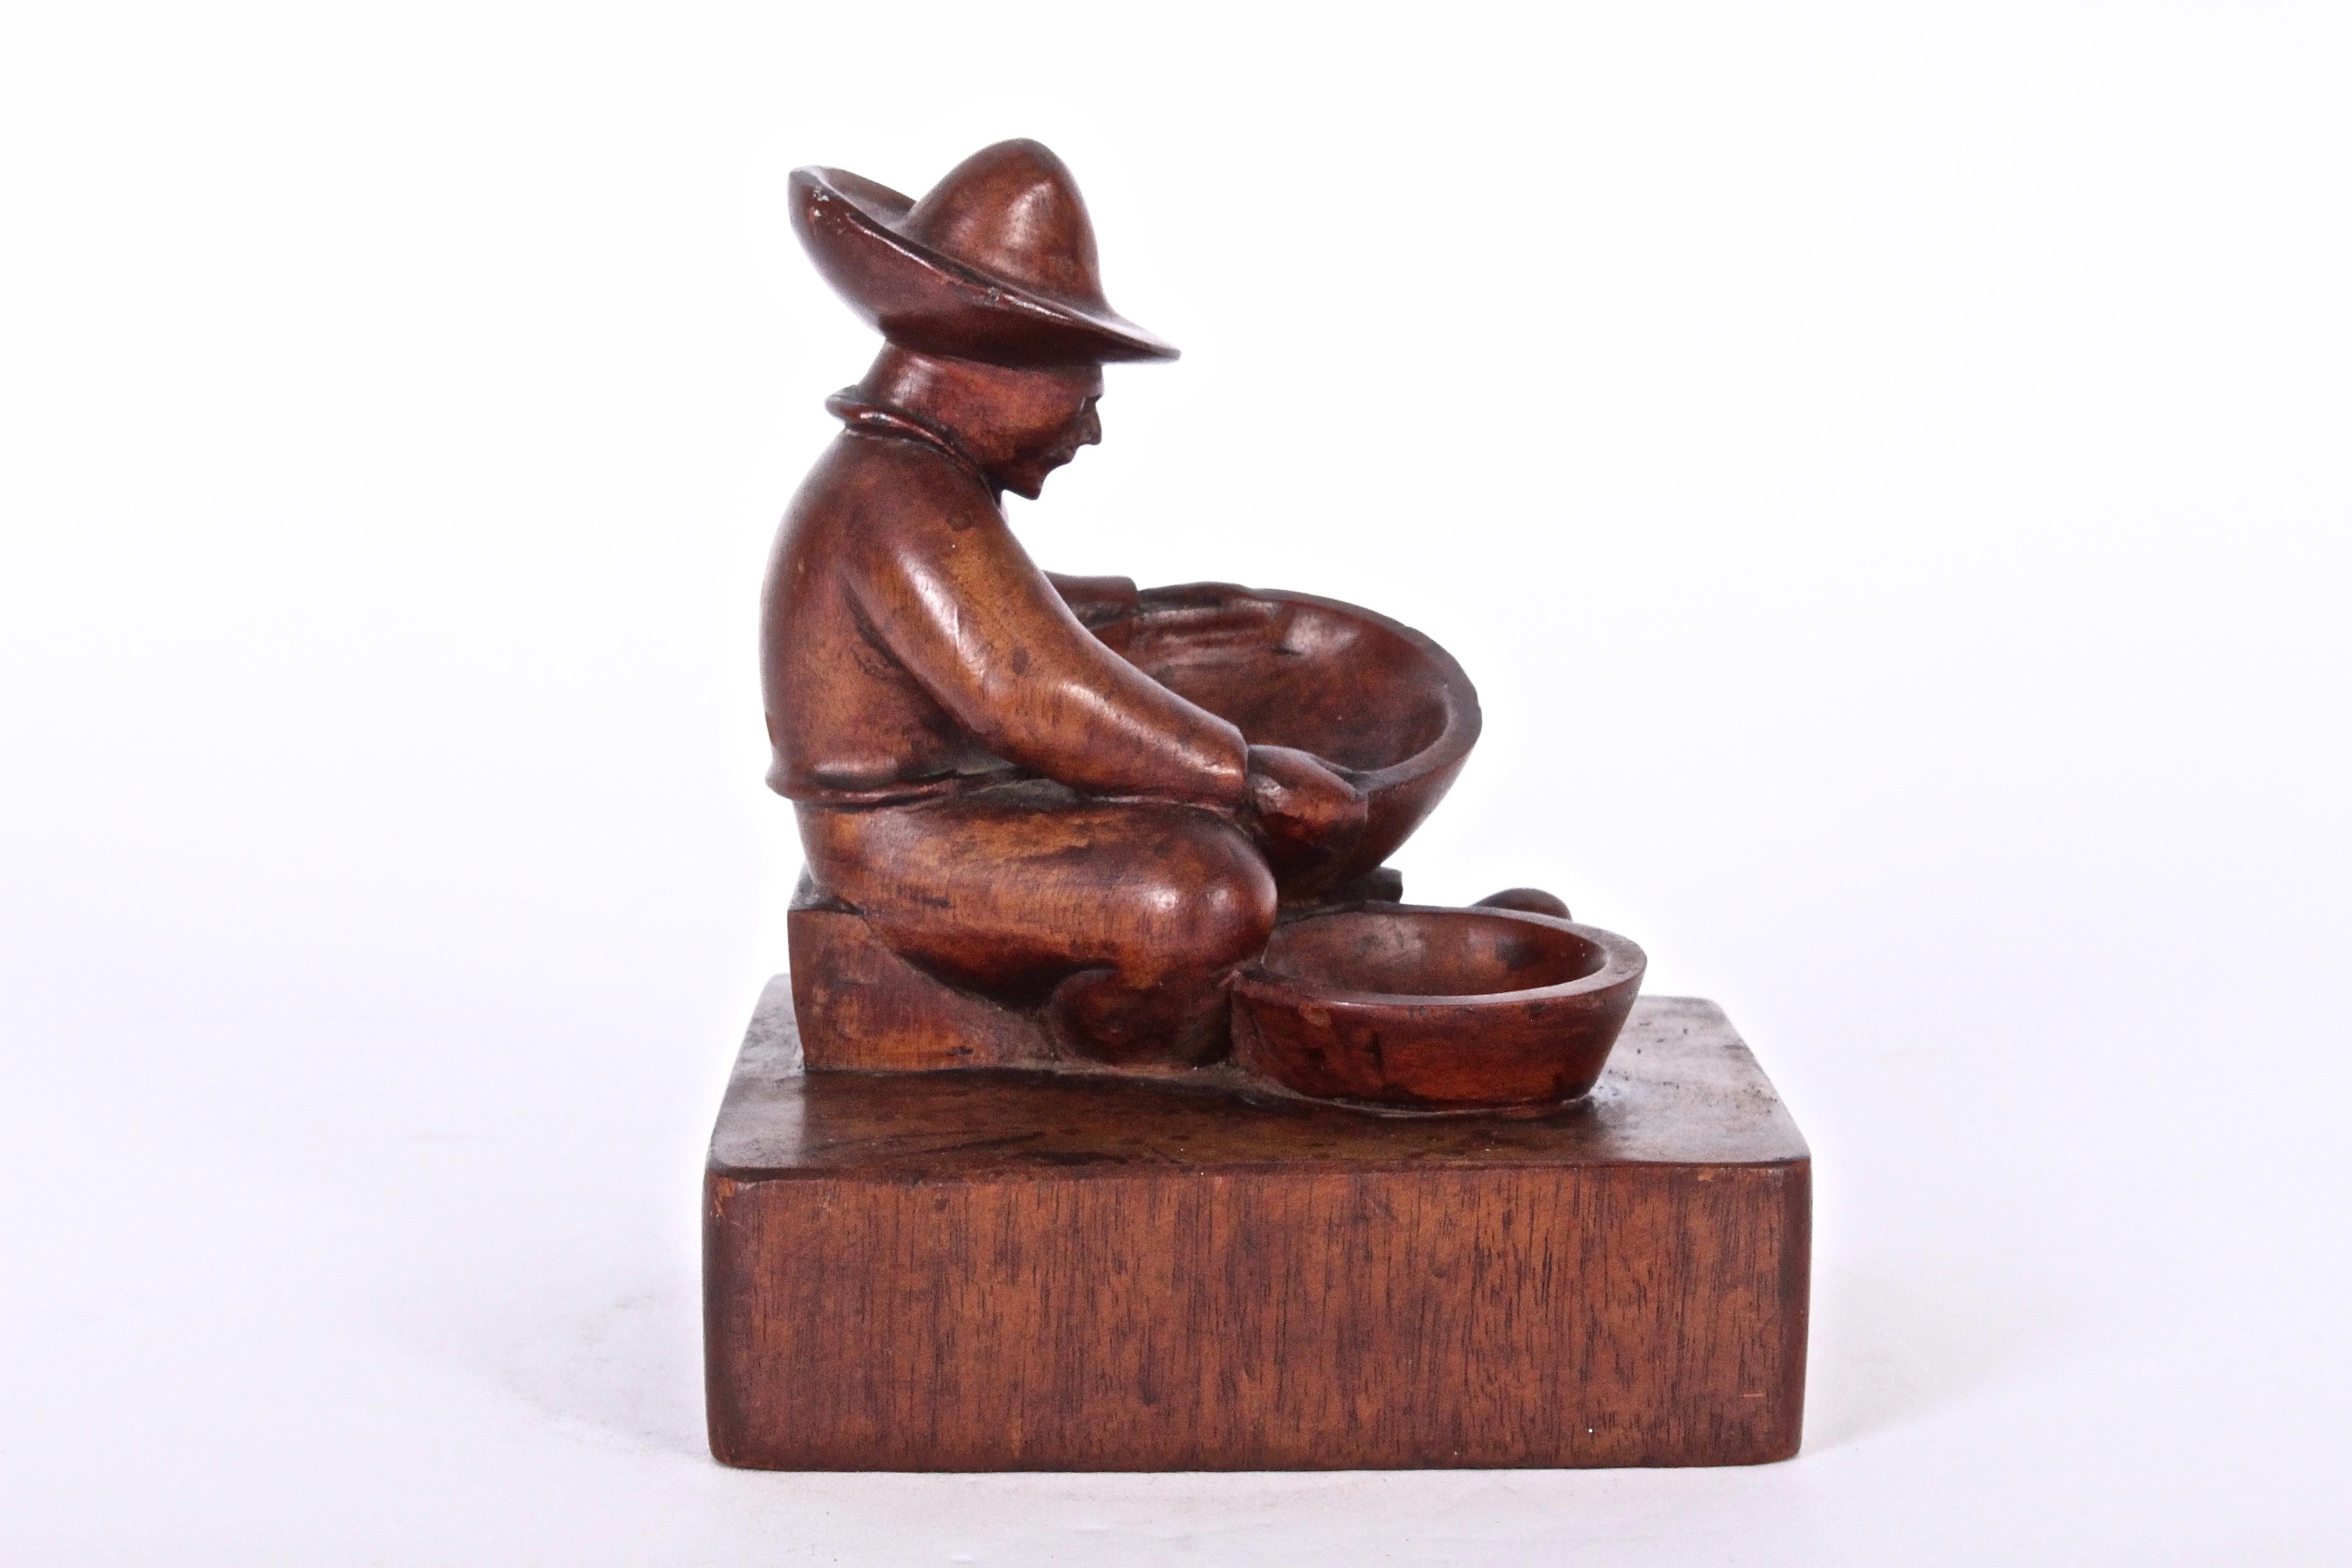 Anfang des 20. Jahrhunderts mexikanische handgeschnitzte Folk Art figurative kleine Mahagoni-Schmuckschale von T. D. Somes. Mit einem handgeschnitzten sitzenden Mann mit Hut und zwei Schalen, die auf einem quadratischen Holzsockel stehen.